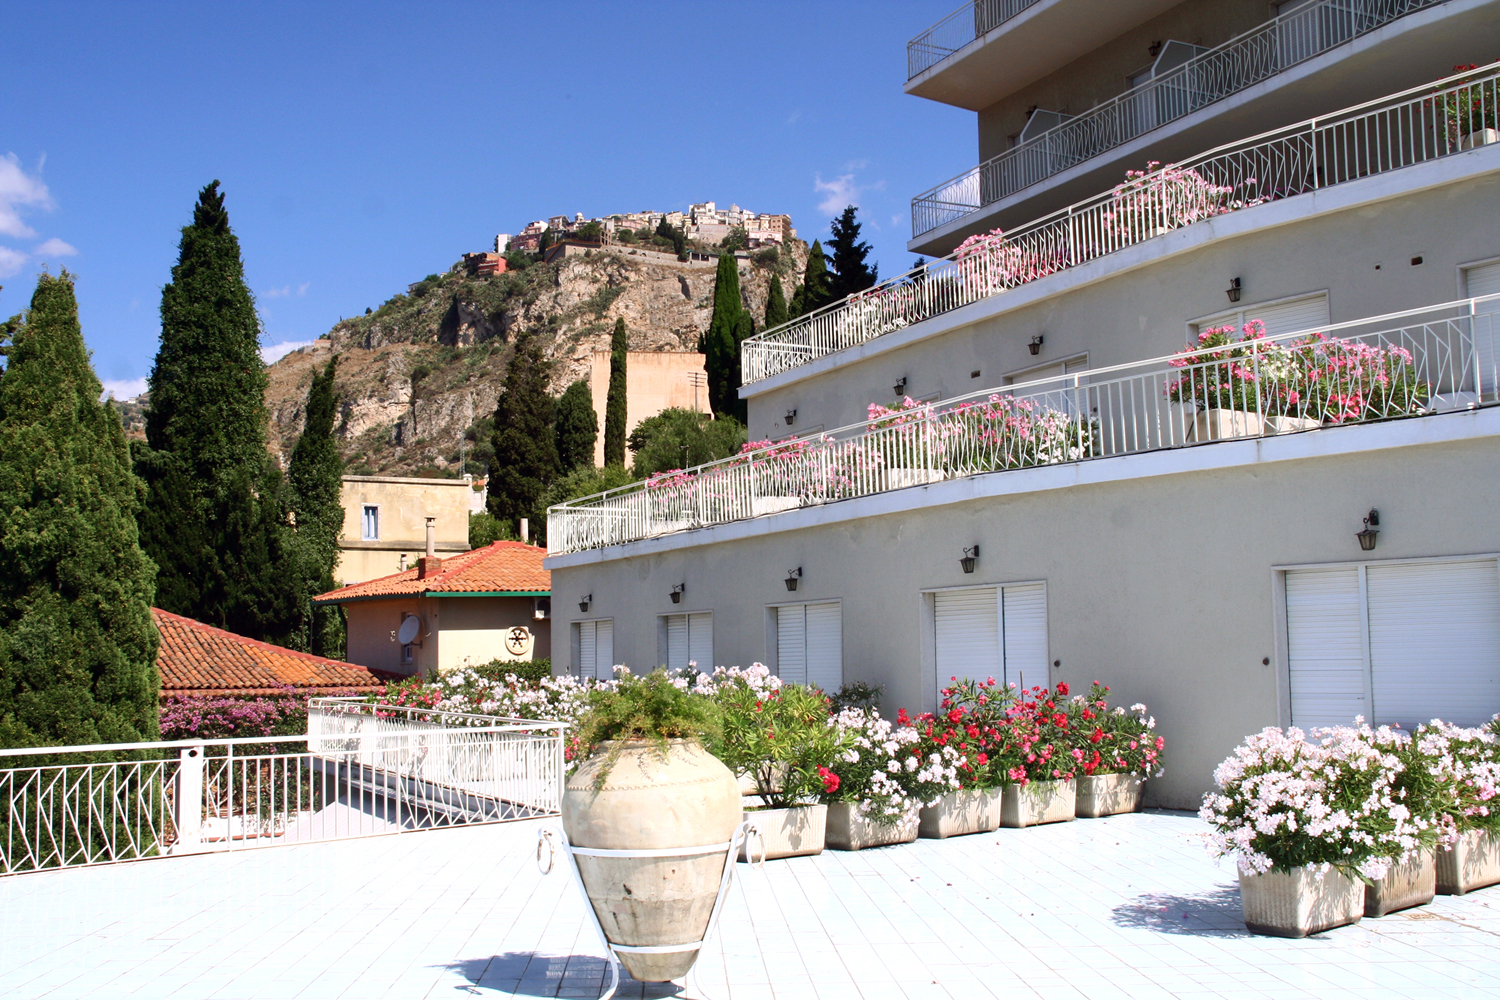 67 / 5.000 Risultati della traduzione Official Site Hotel Lido Mediterranee in Taormina, Sicily, Italy 